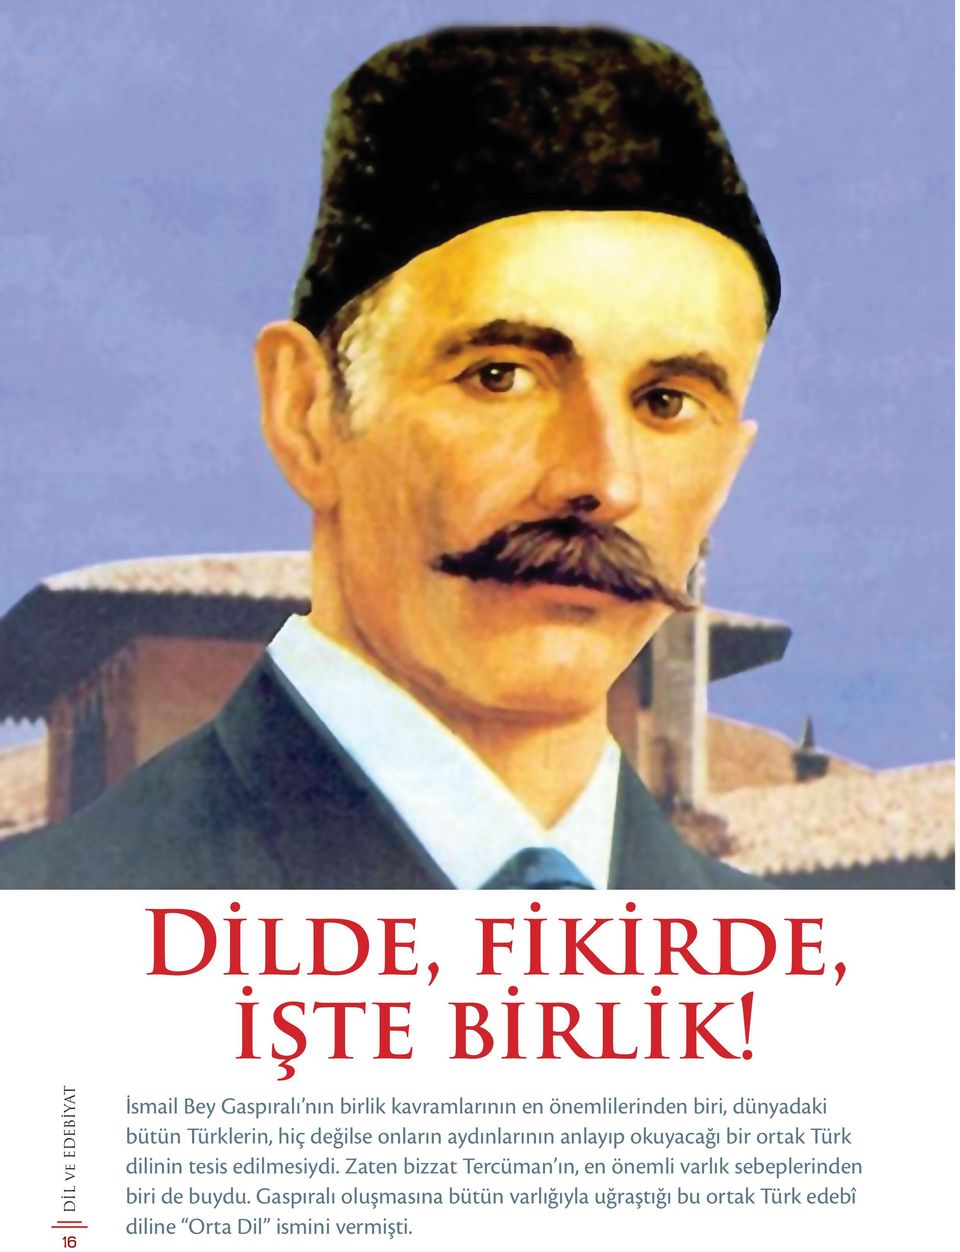 Türklerin, hiç değilse onların aydınlarının anlayıp okuyacağı bir ortak Türk dilinin tesis